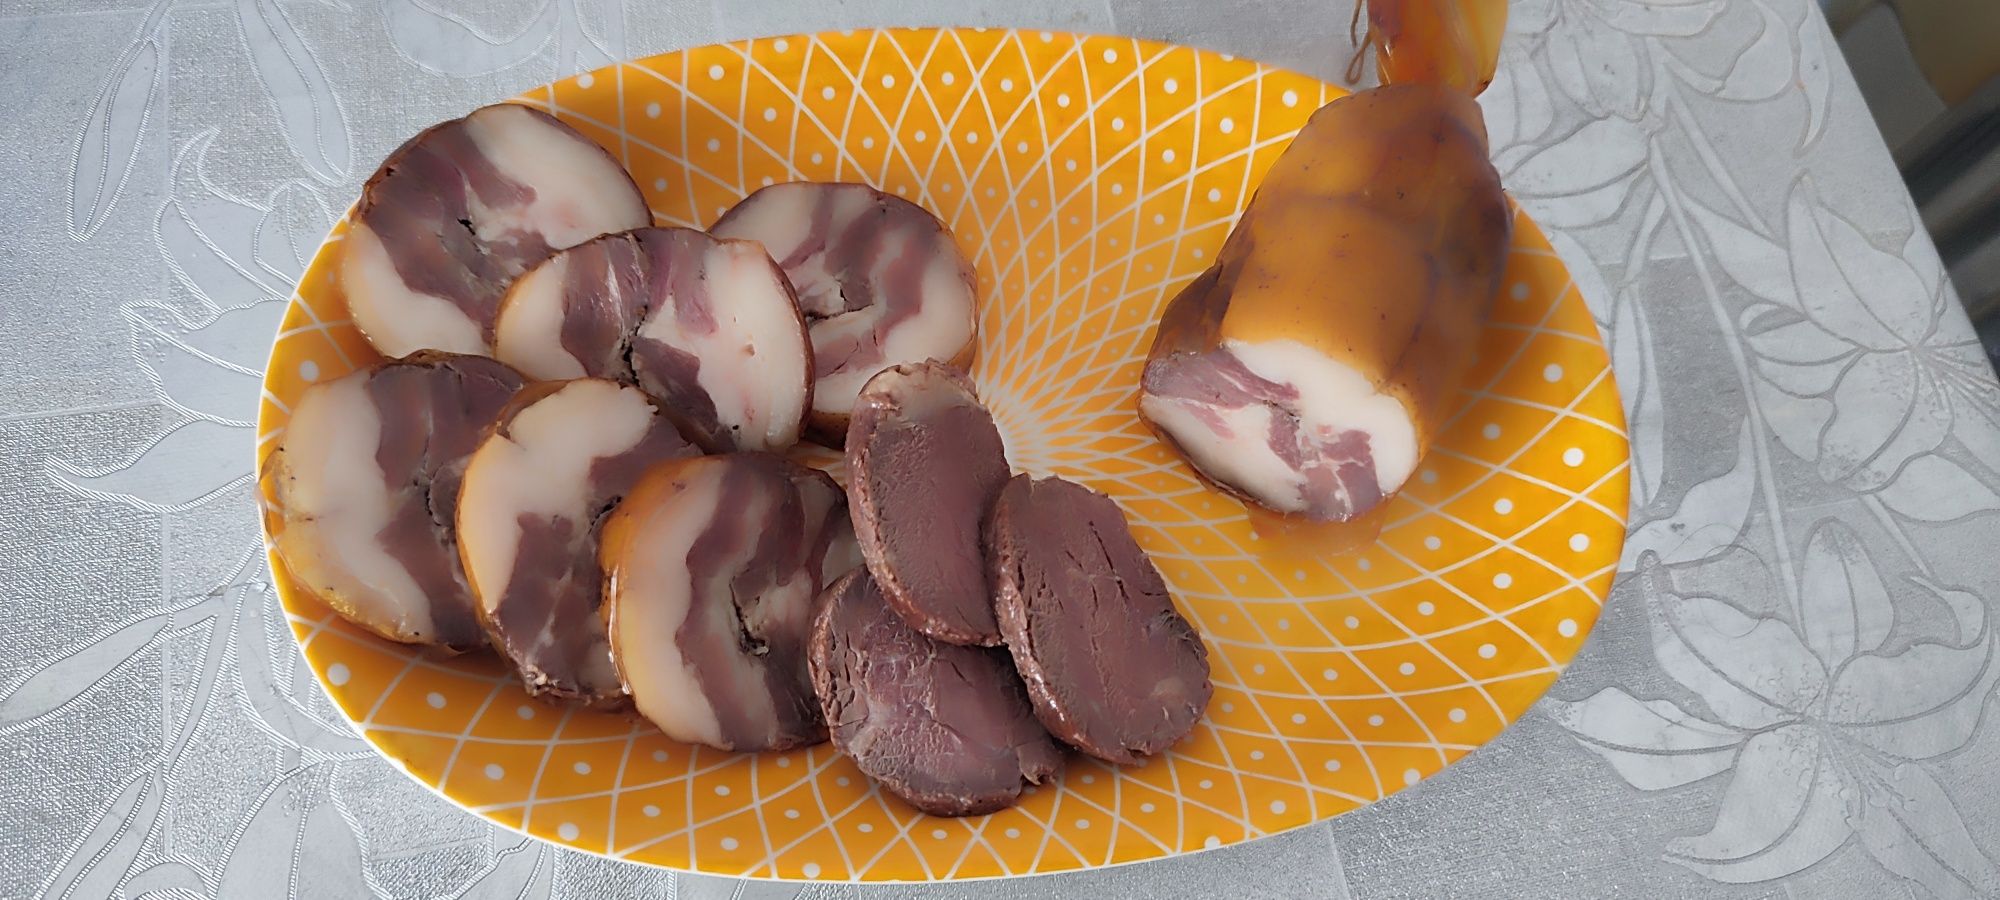 Свинина горячего копчения по-домашнему - пошаговый рецепт с фото, ингредиенты, как приготовить